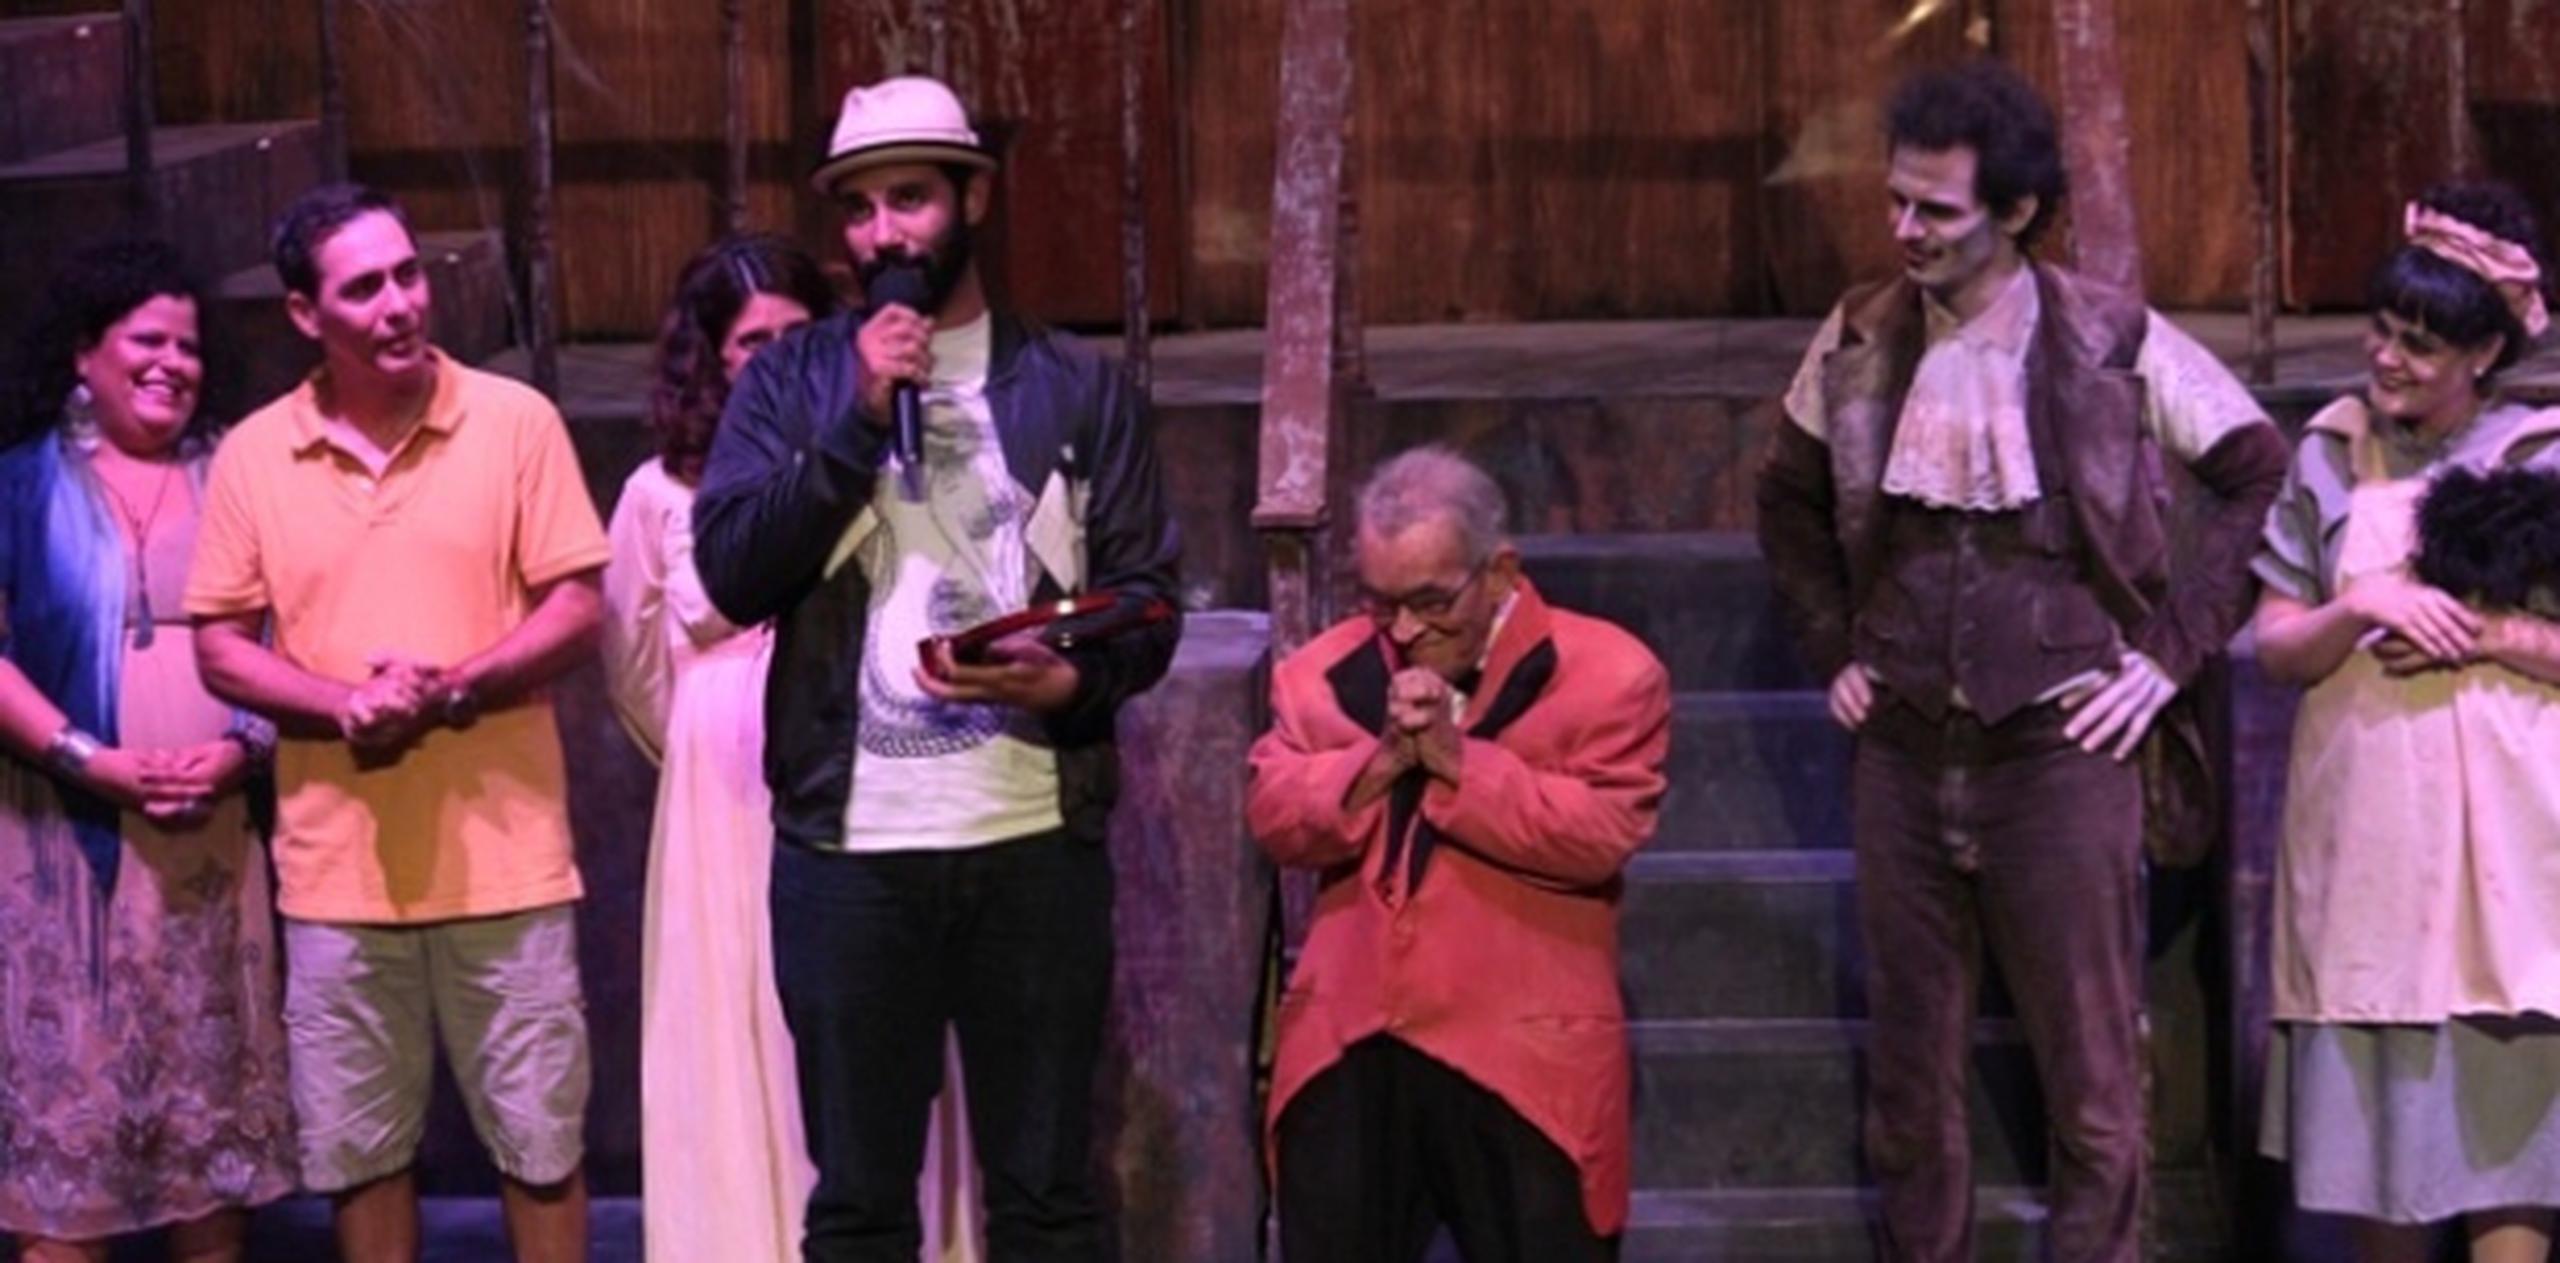 Los integrantes de Teatro Breve reconocieron la labor artística de Israel “Shorty” Castro. Suministradas